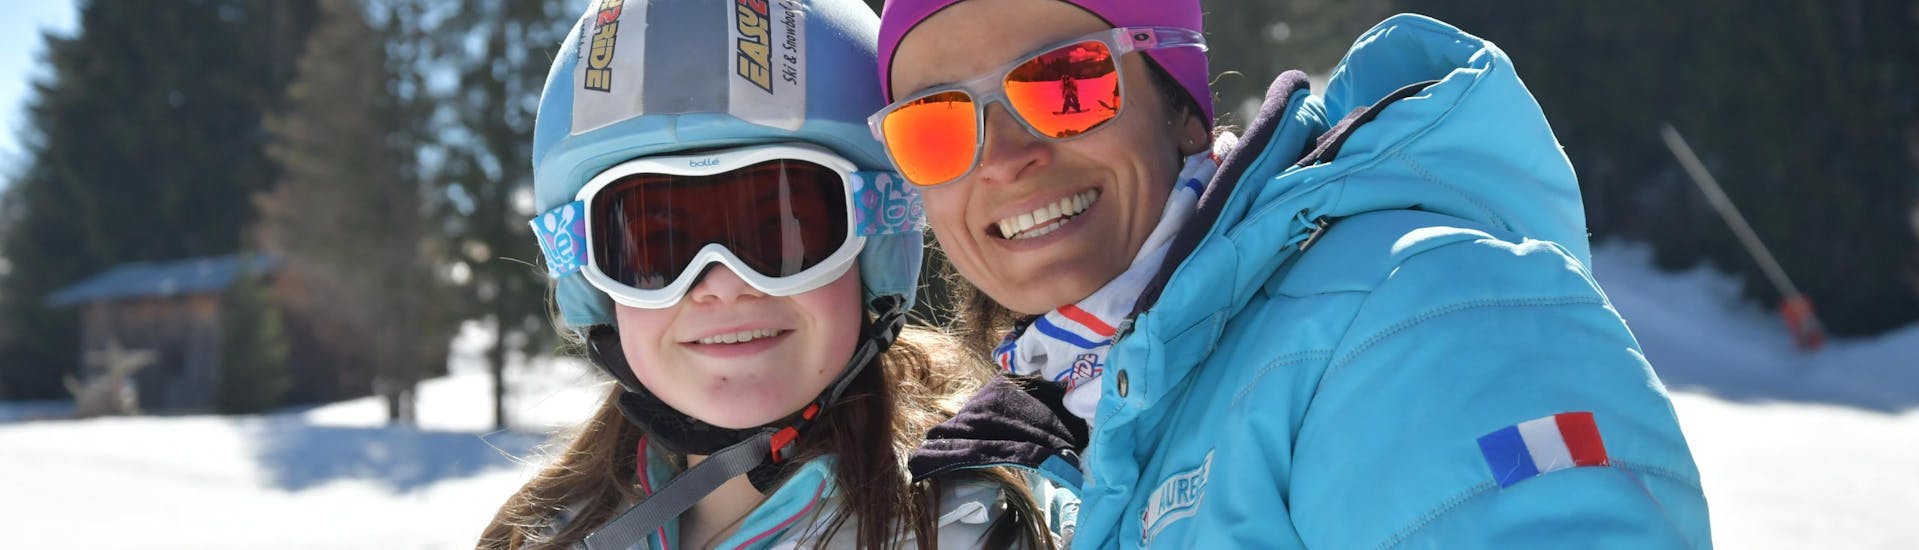 Lezioni private di sci per bambini a partire da 5 anni per tutti i livelli.